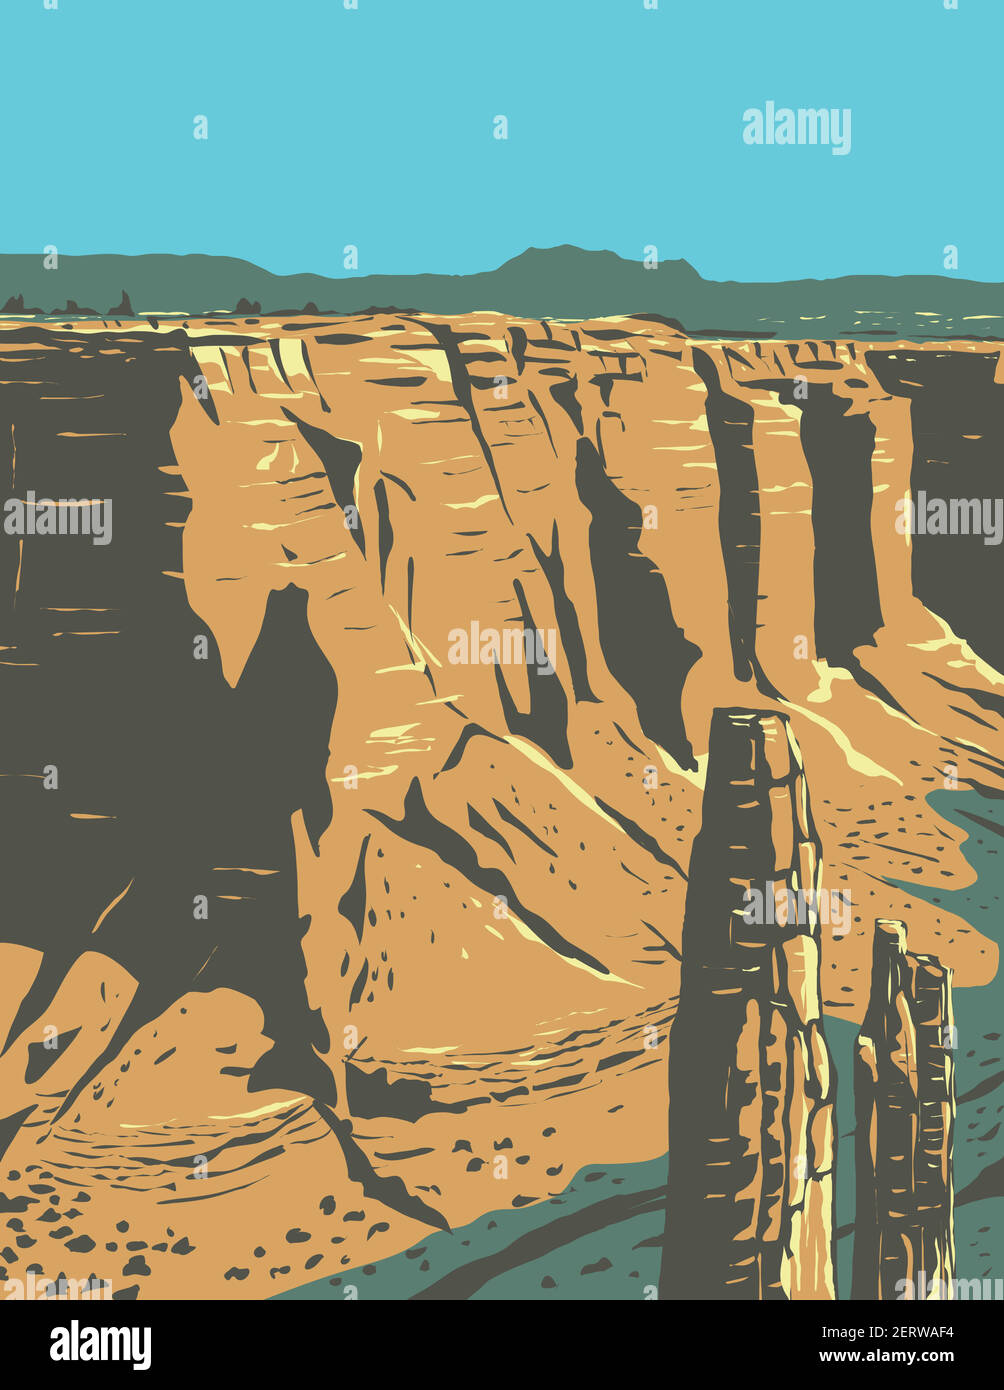 WPA Plakatkunst des Spider Rock, ein Sandsteinturm in Canyon de Chelly National Monument auf Navajo Stammesland in Arizona USA in Werke PR Stock Vektor